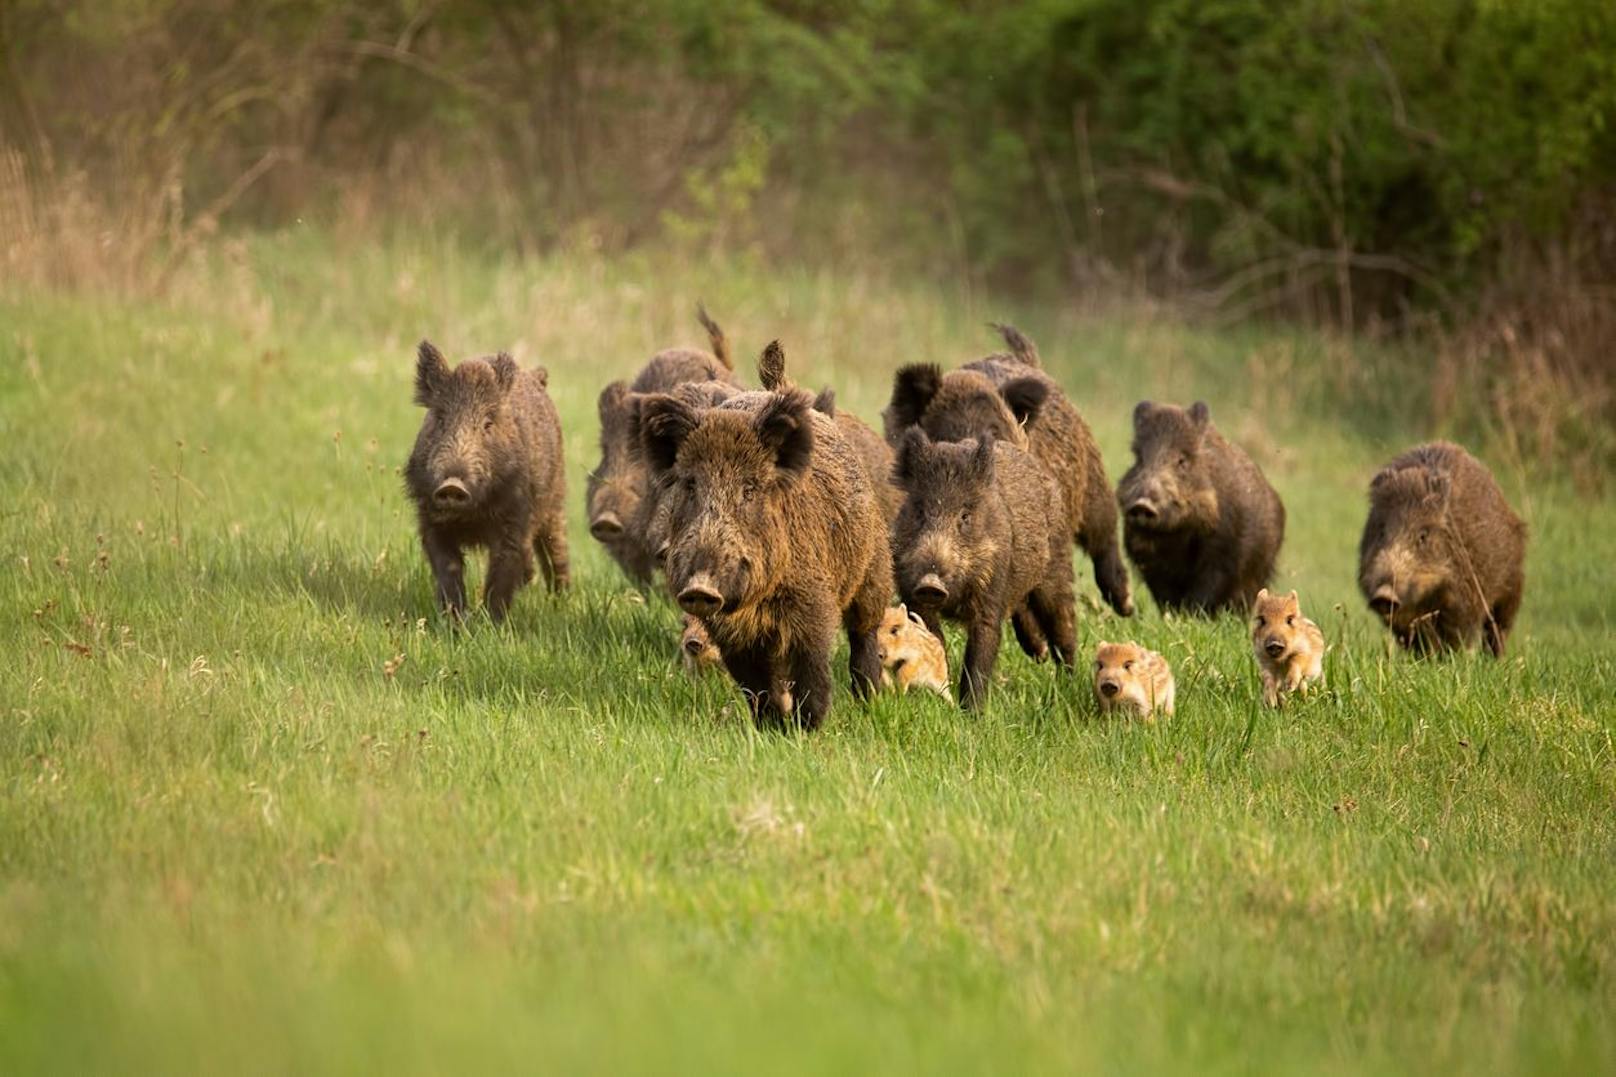 Ein Ansammlung von mehreren Wildschweinen nennt man "Rotte". Jedoch werden hier männliche Tiere nur bis zum 2. Lebensjahr geduldet.